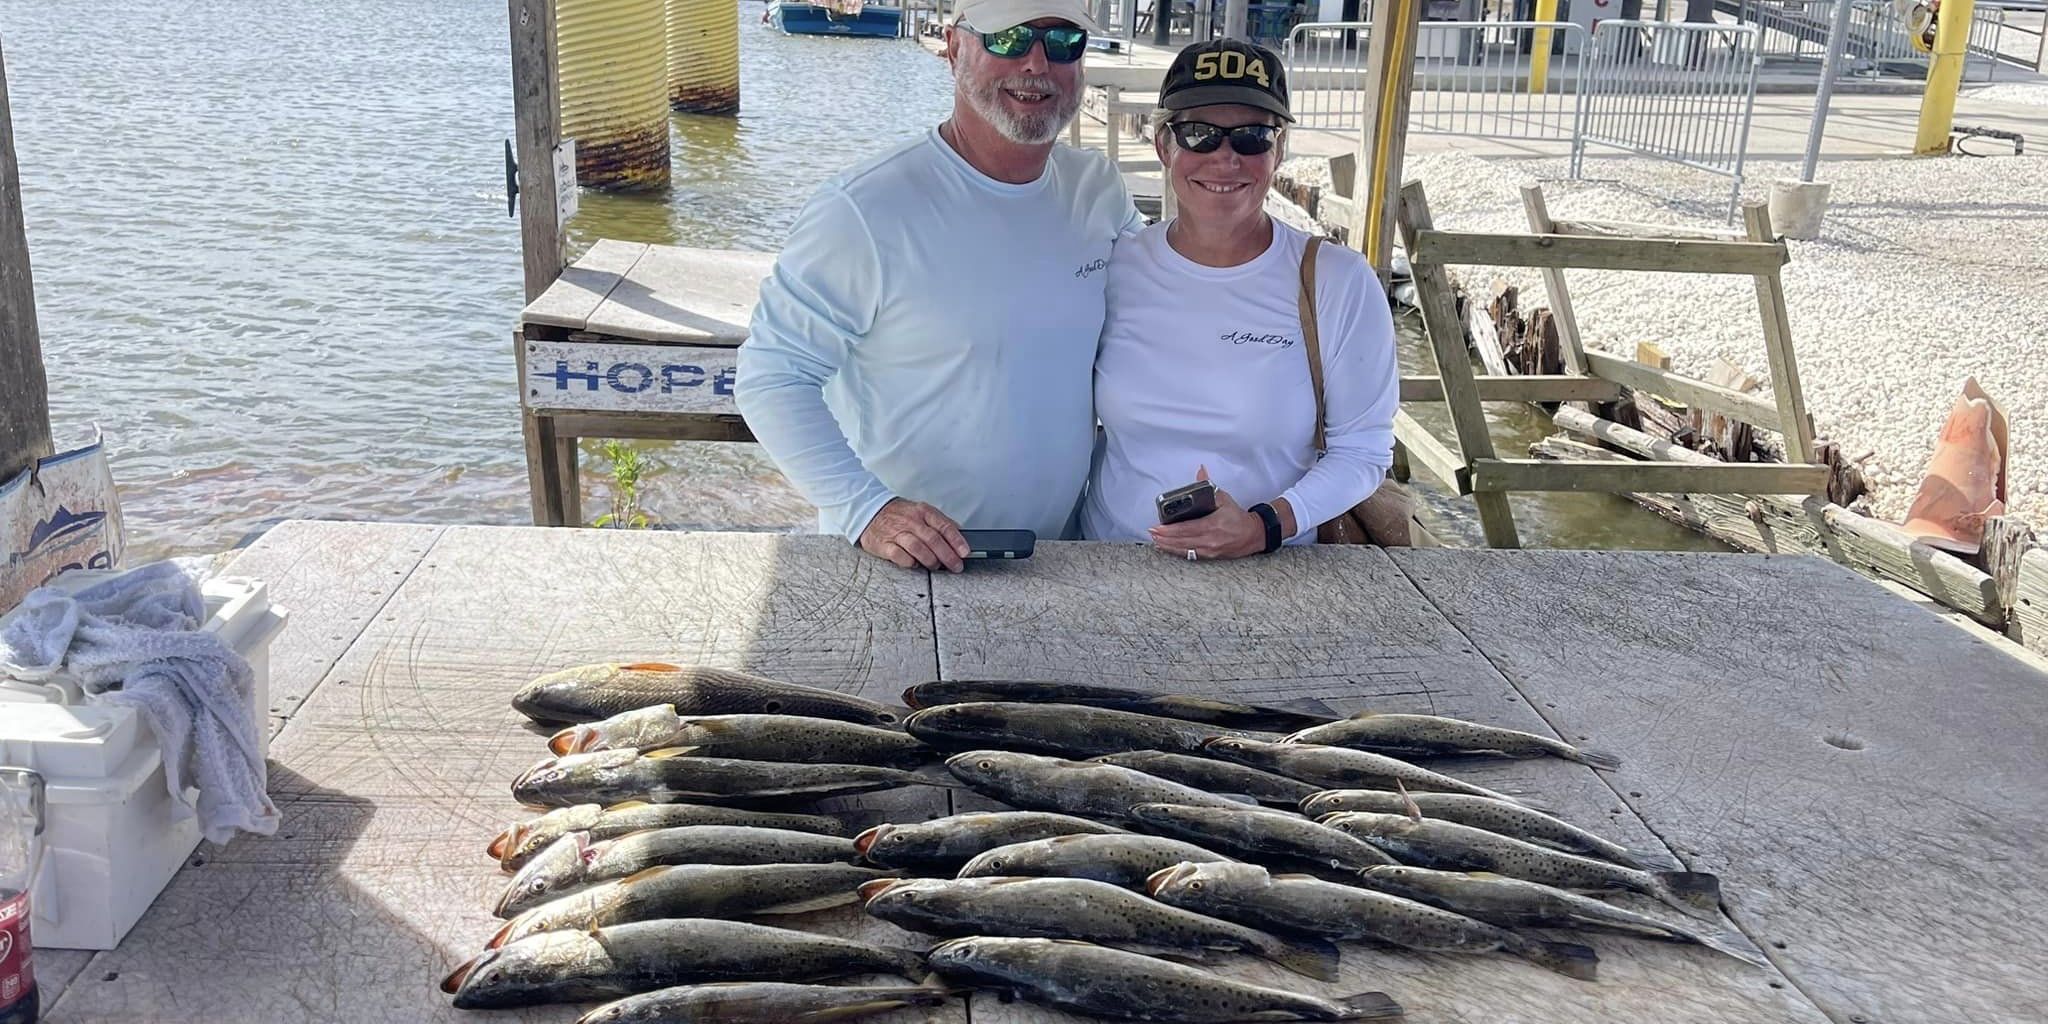 5 Eaux Fishing Charters Fishing In Louisiana - 6 Hour Charter Trip fishing Inshore